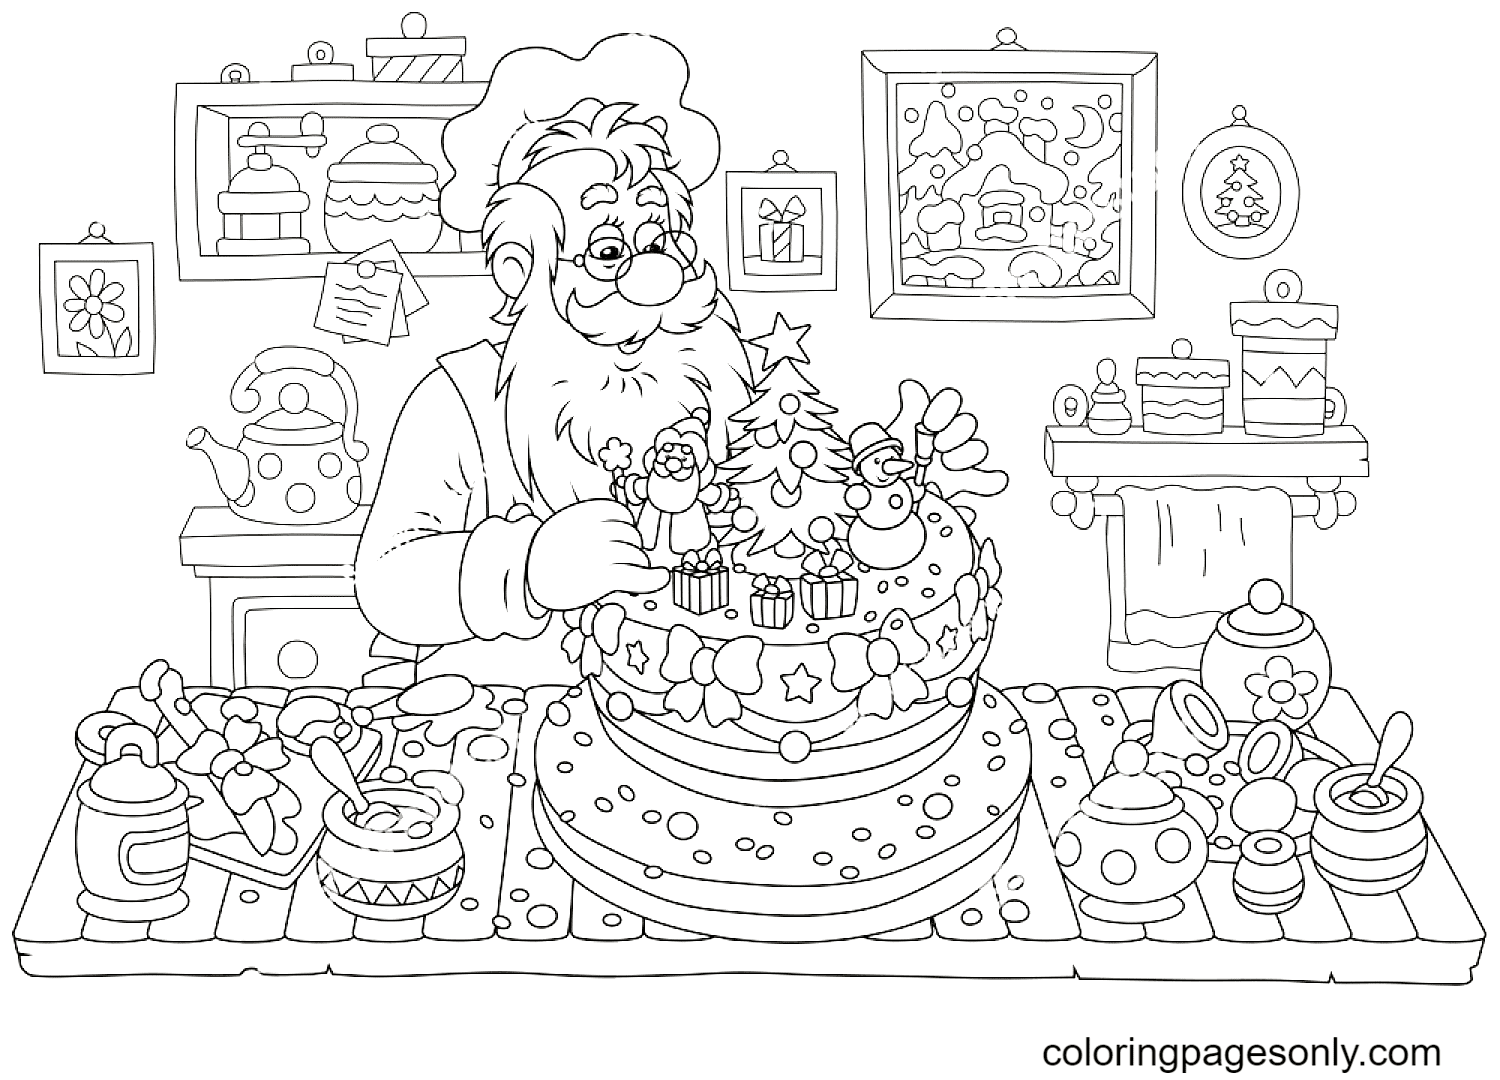 Le Père Noël prépare un gâteau de Noël dans sa cuisine du Père Noël